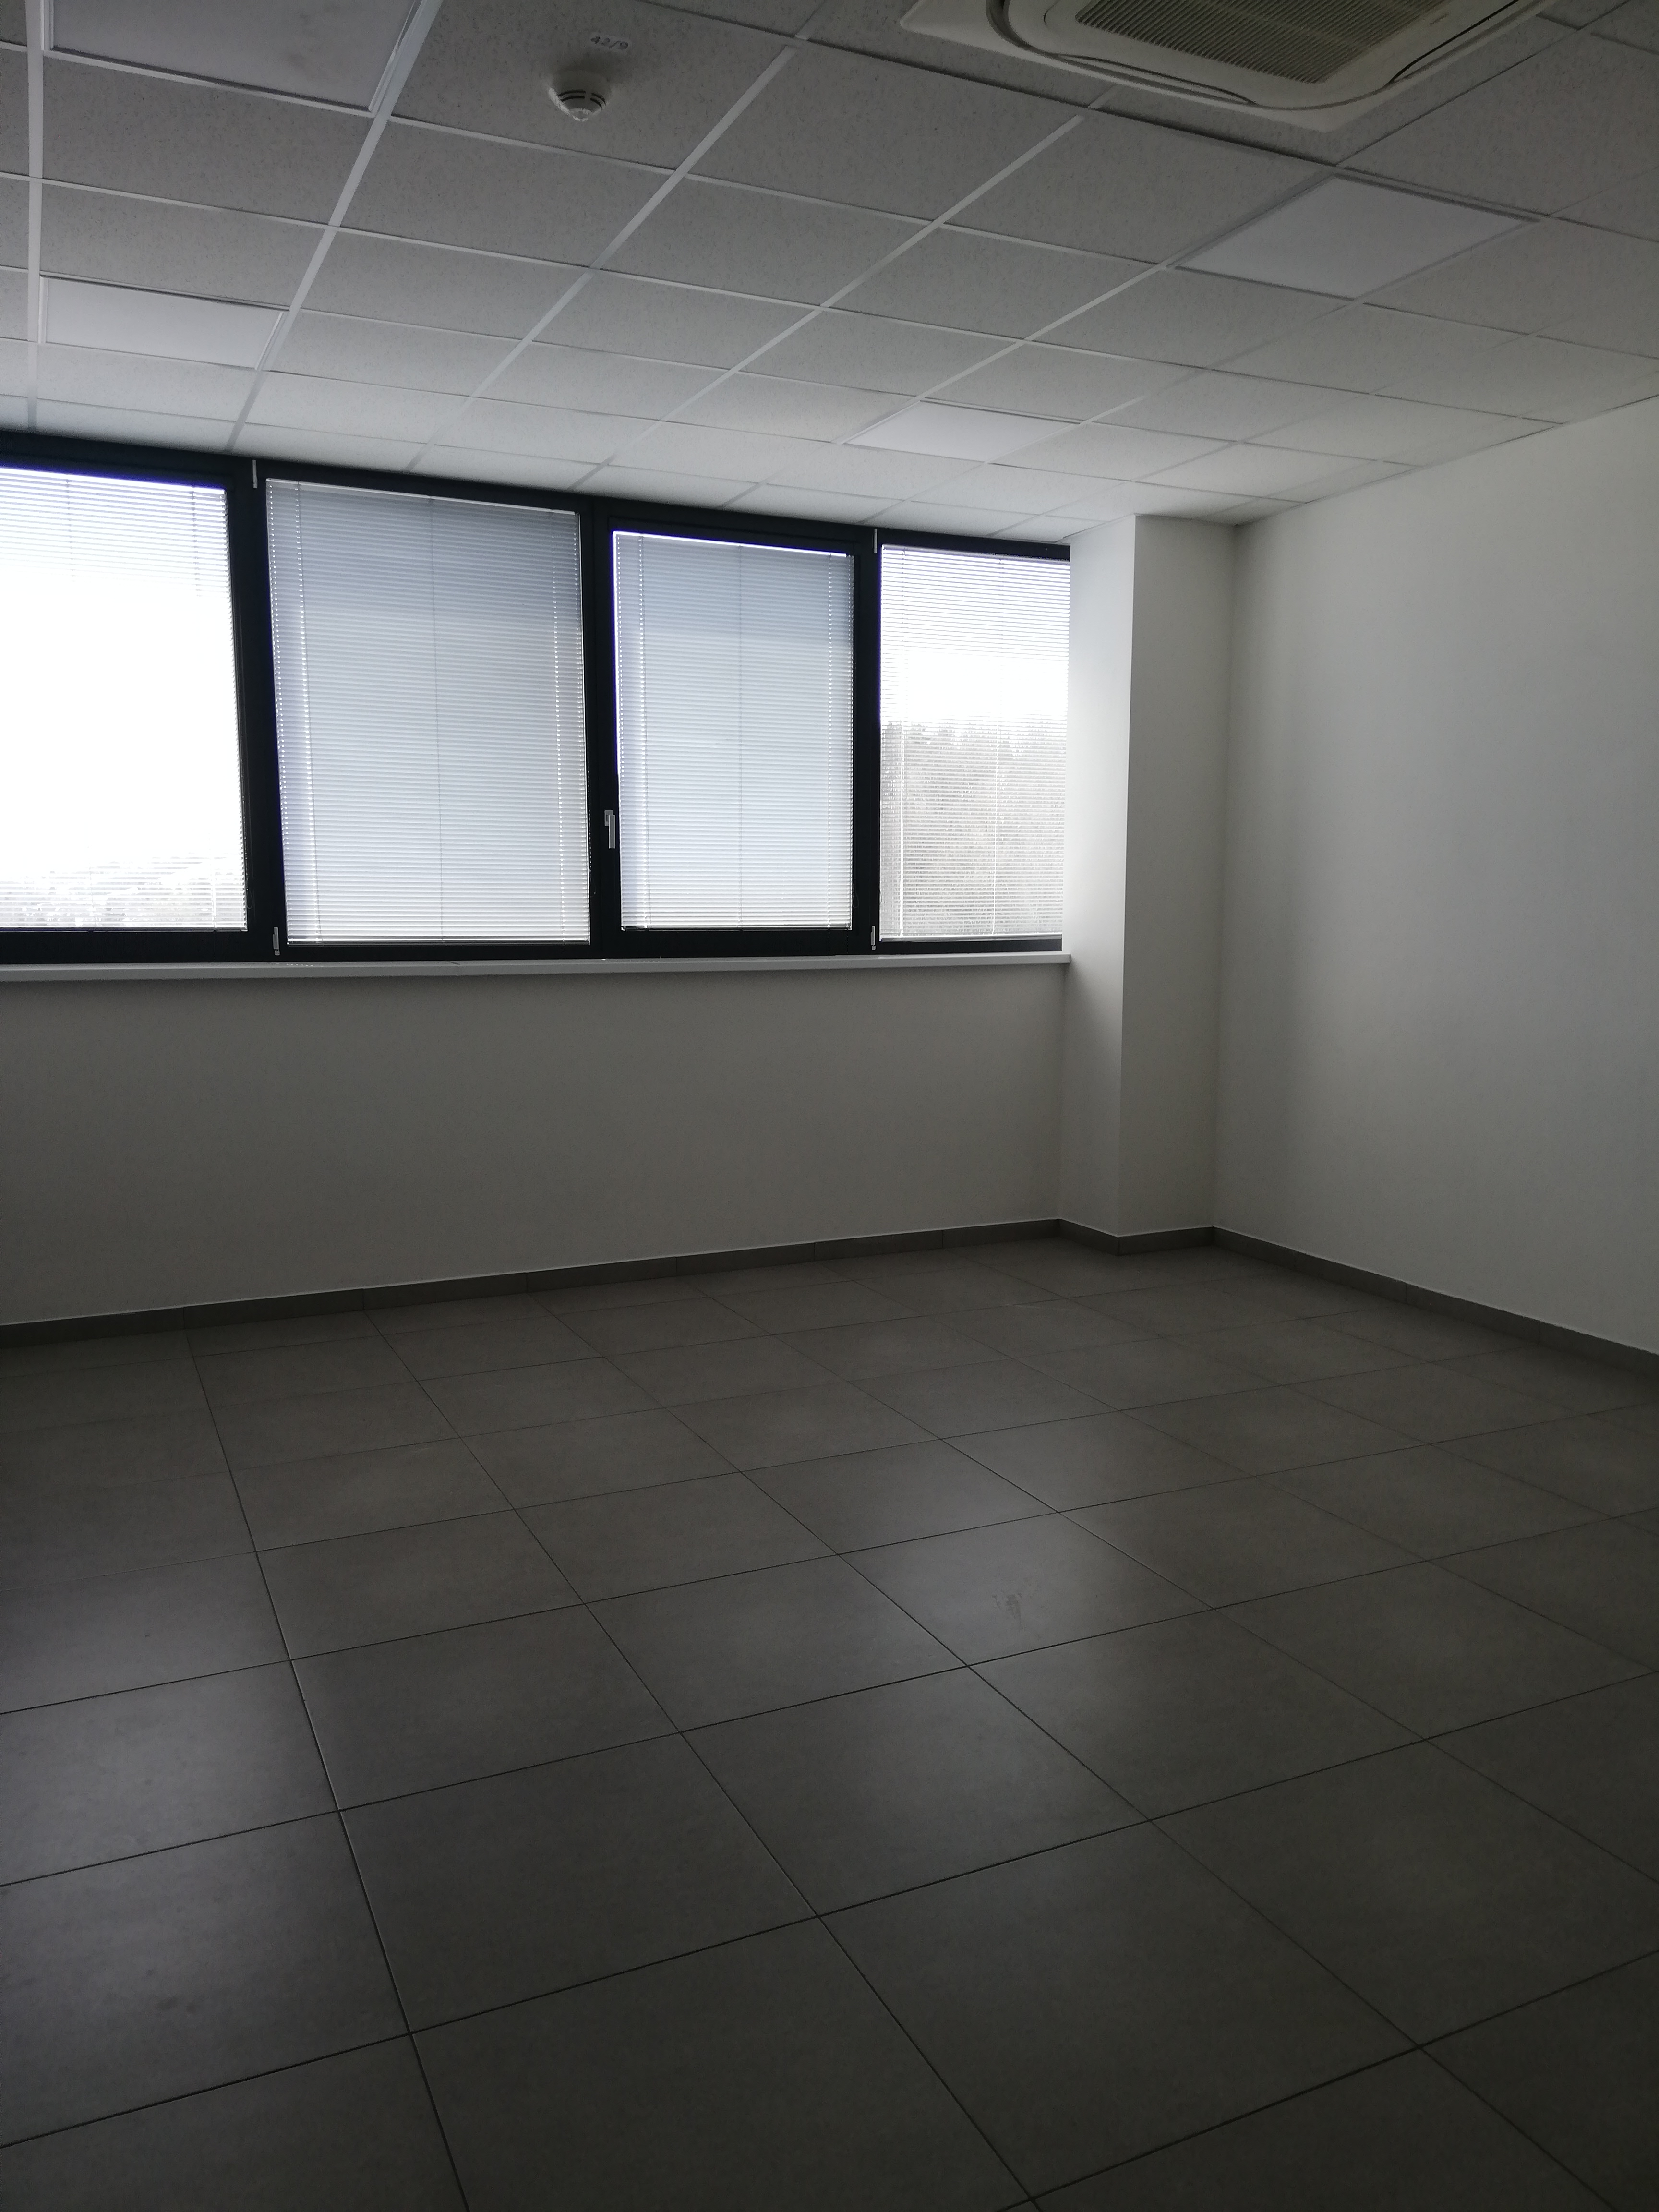 Moderné kancelárske priestory na prenájom s parkovaním, od 39-520 m2, Žilina okrajová časť.